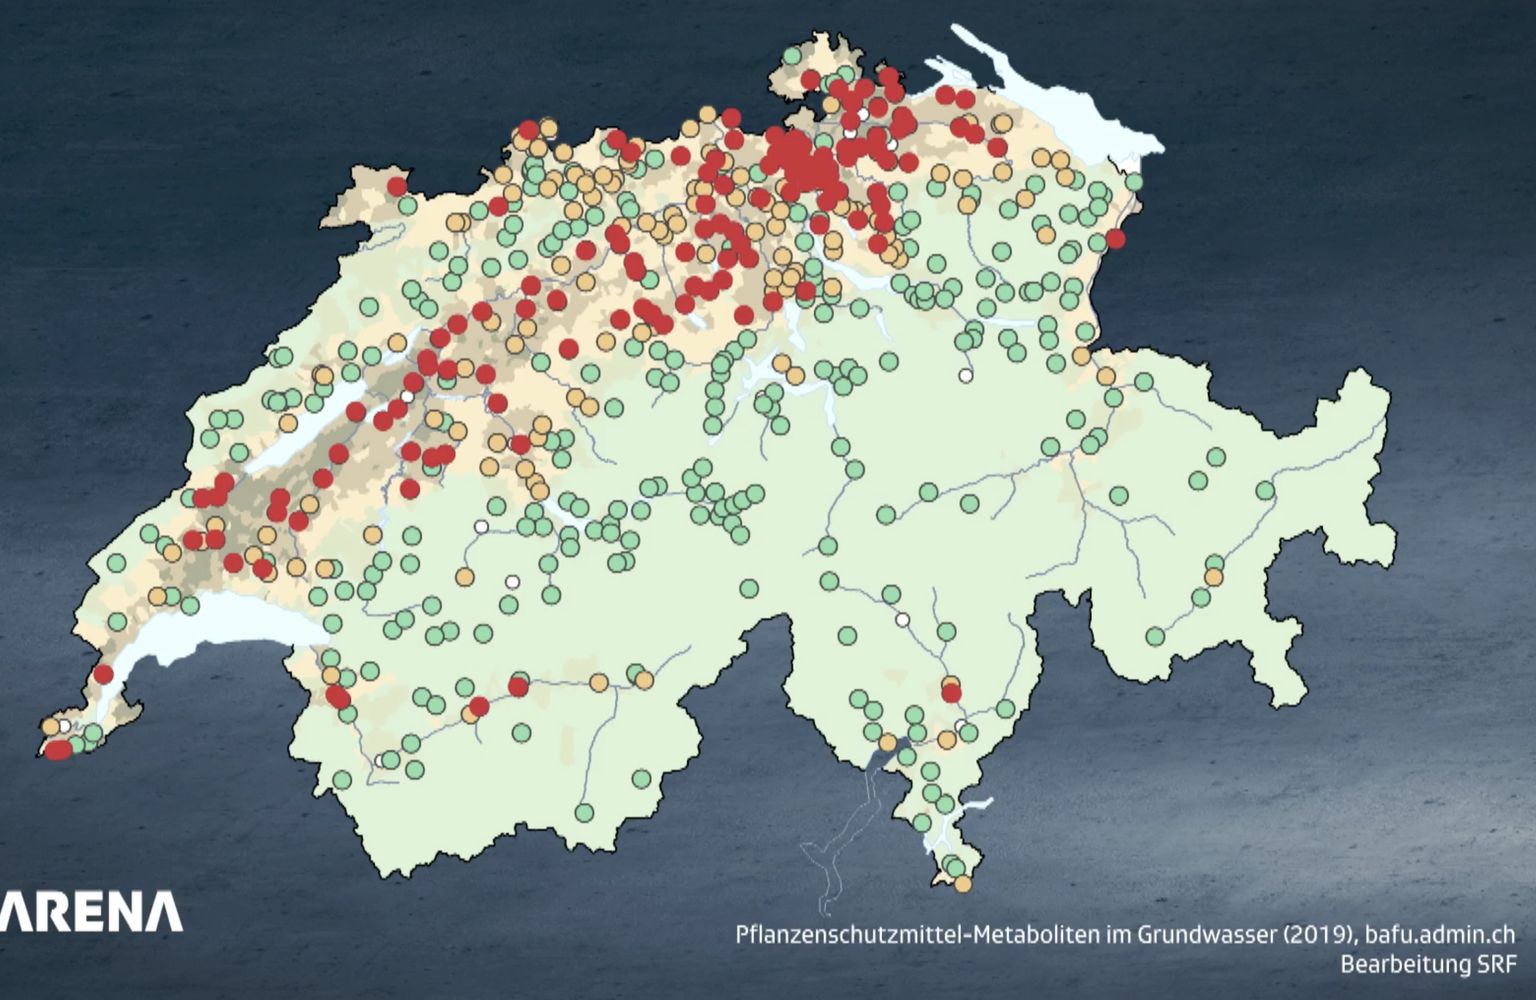 Besonders in den Messtationen im Mittelland ist das Grundwasser belastet (rote/orange Punkte).